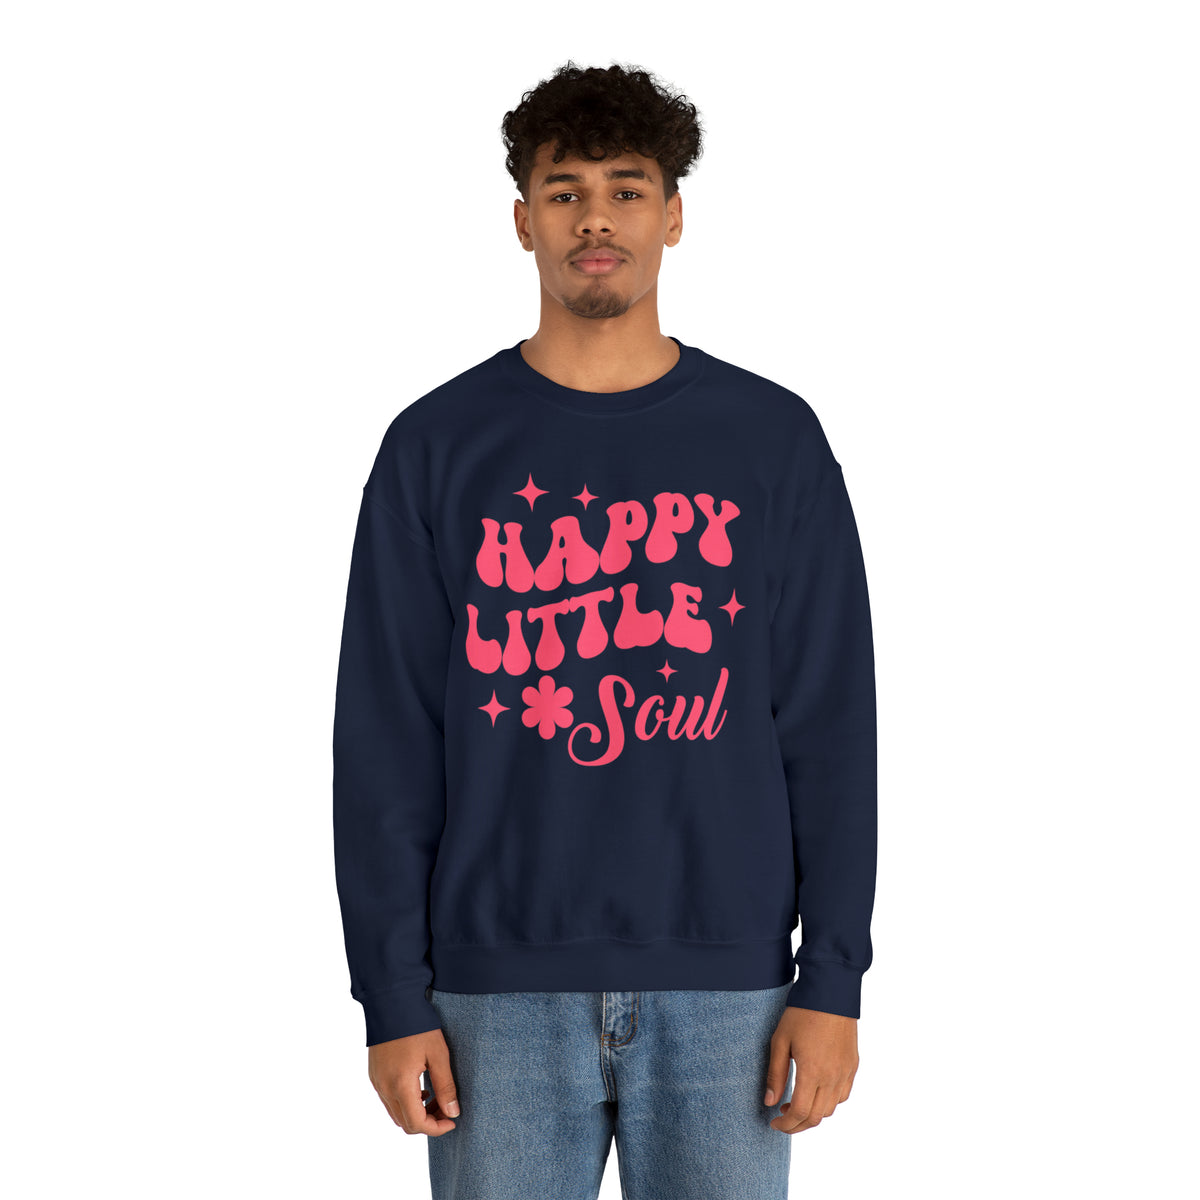 Happy Little Soul Sweatshirt, Happy Vibes Sweatshirt, Positivity Sweatshirt, Boho Sweatshirt, Hippie Sweater